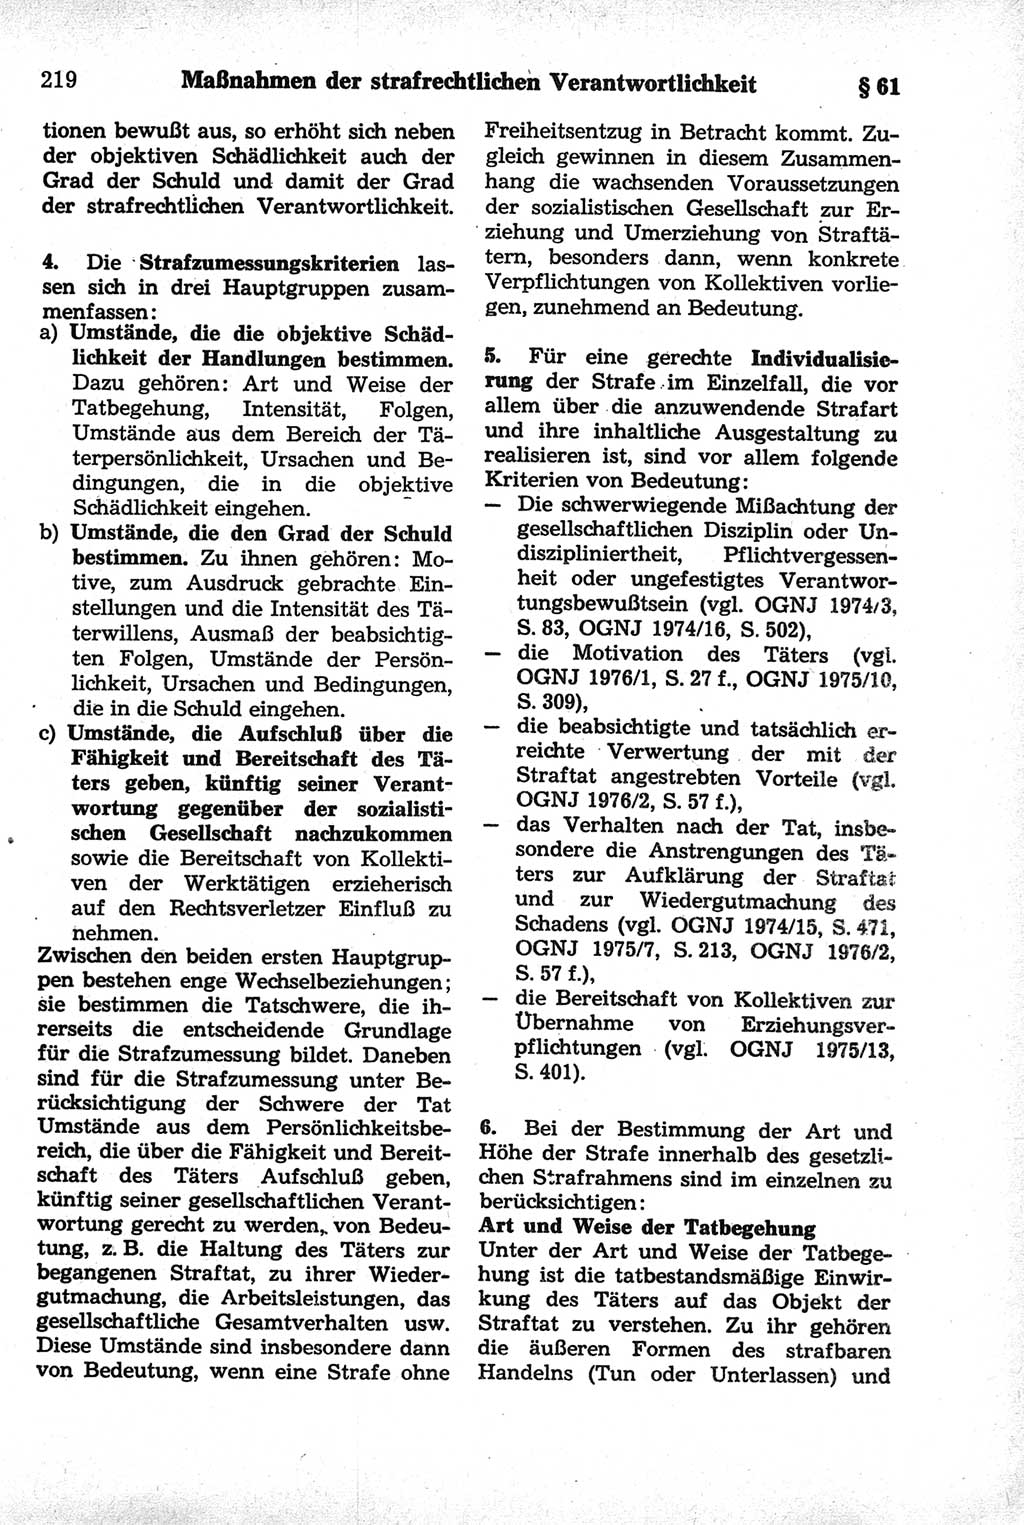 Strafrecht der Deutschen Demokratischen Republik (DDR), Kommentar zum Strafgesetzbuch (StGB) 1981, Seite 219 (Strafr. DDR Komm. StGB 1981, S. 219)